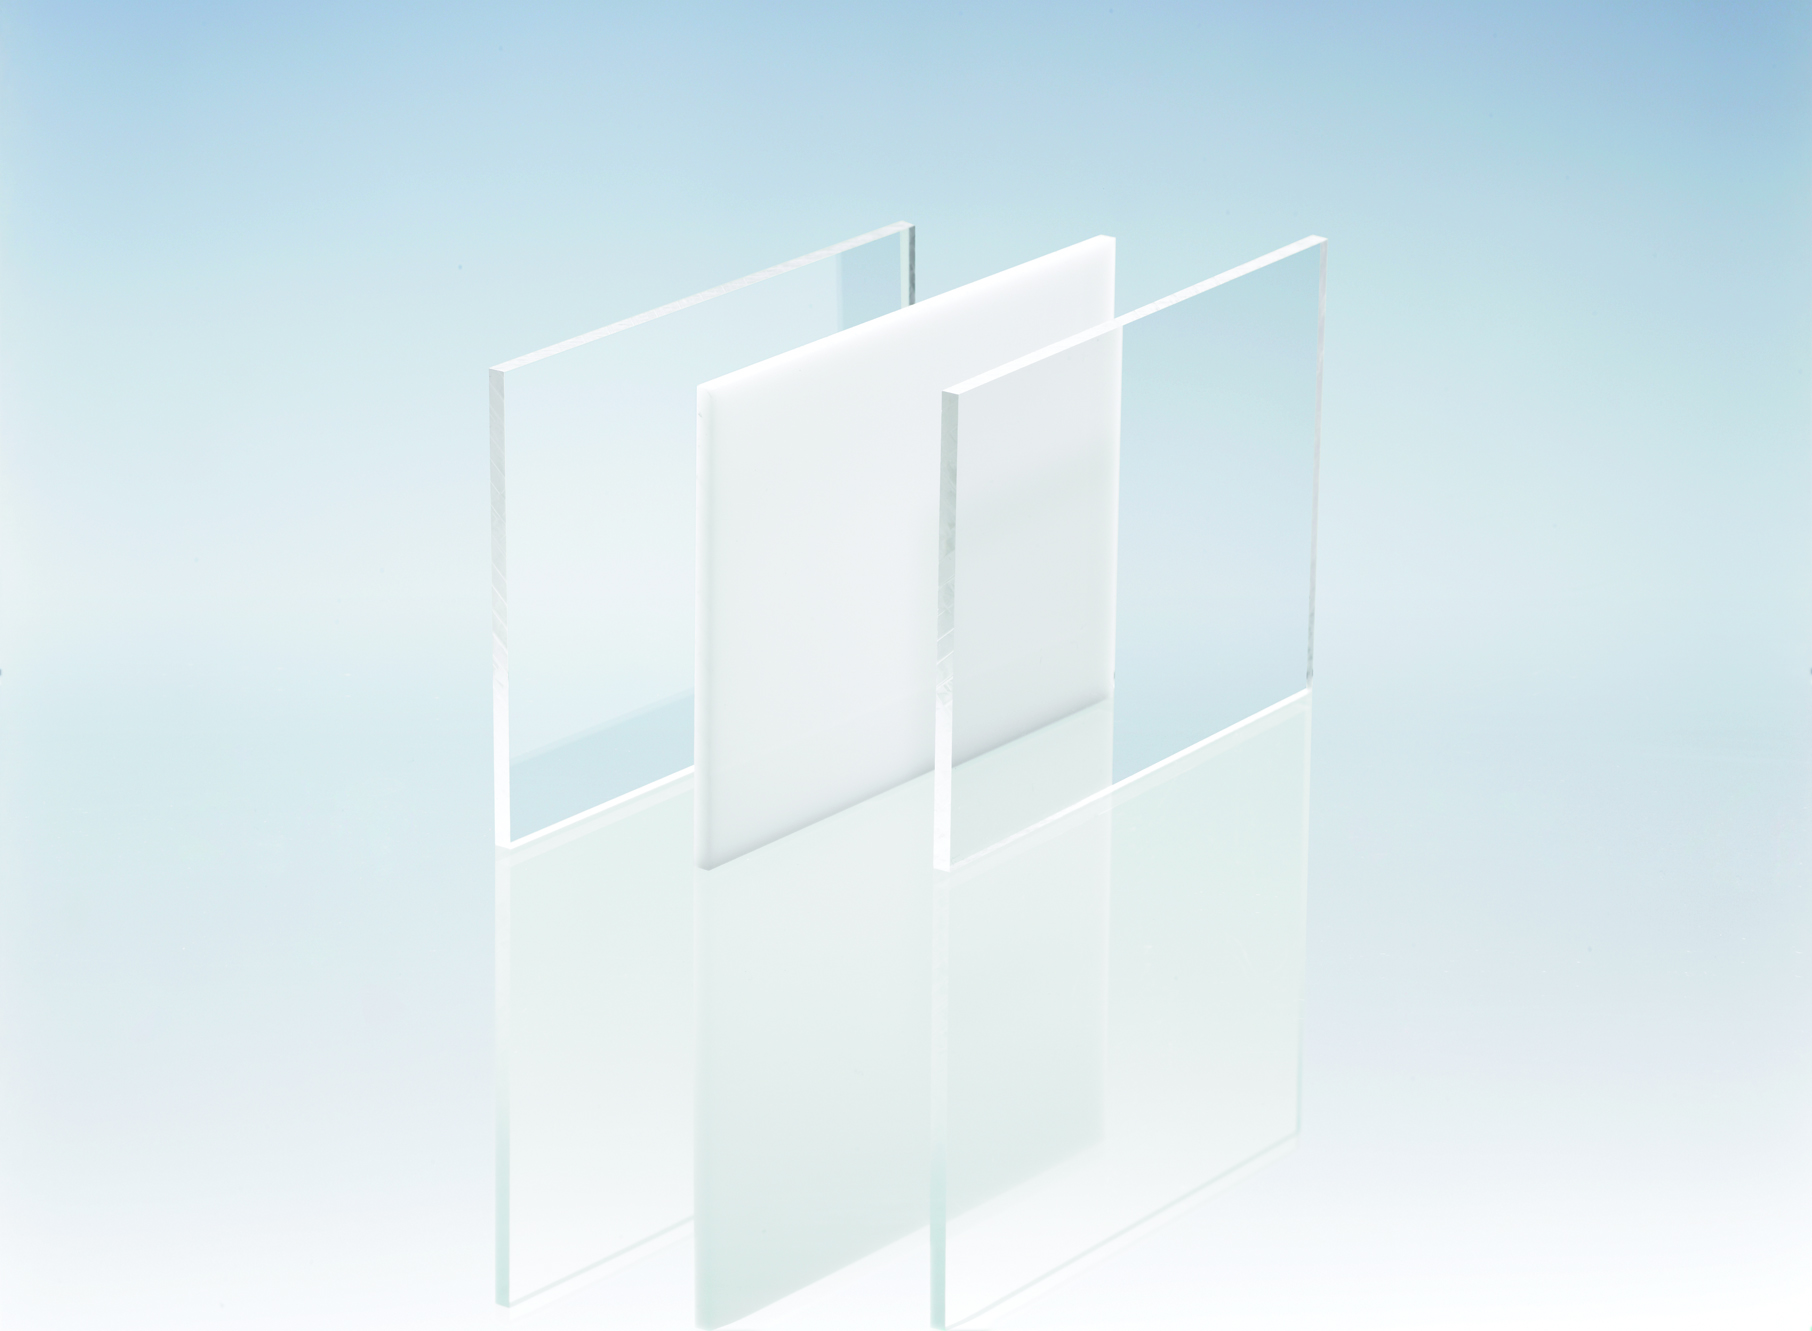 Massivplatten aus Acrylglas - die richtige Entscheidung für Ihr Projekt